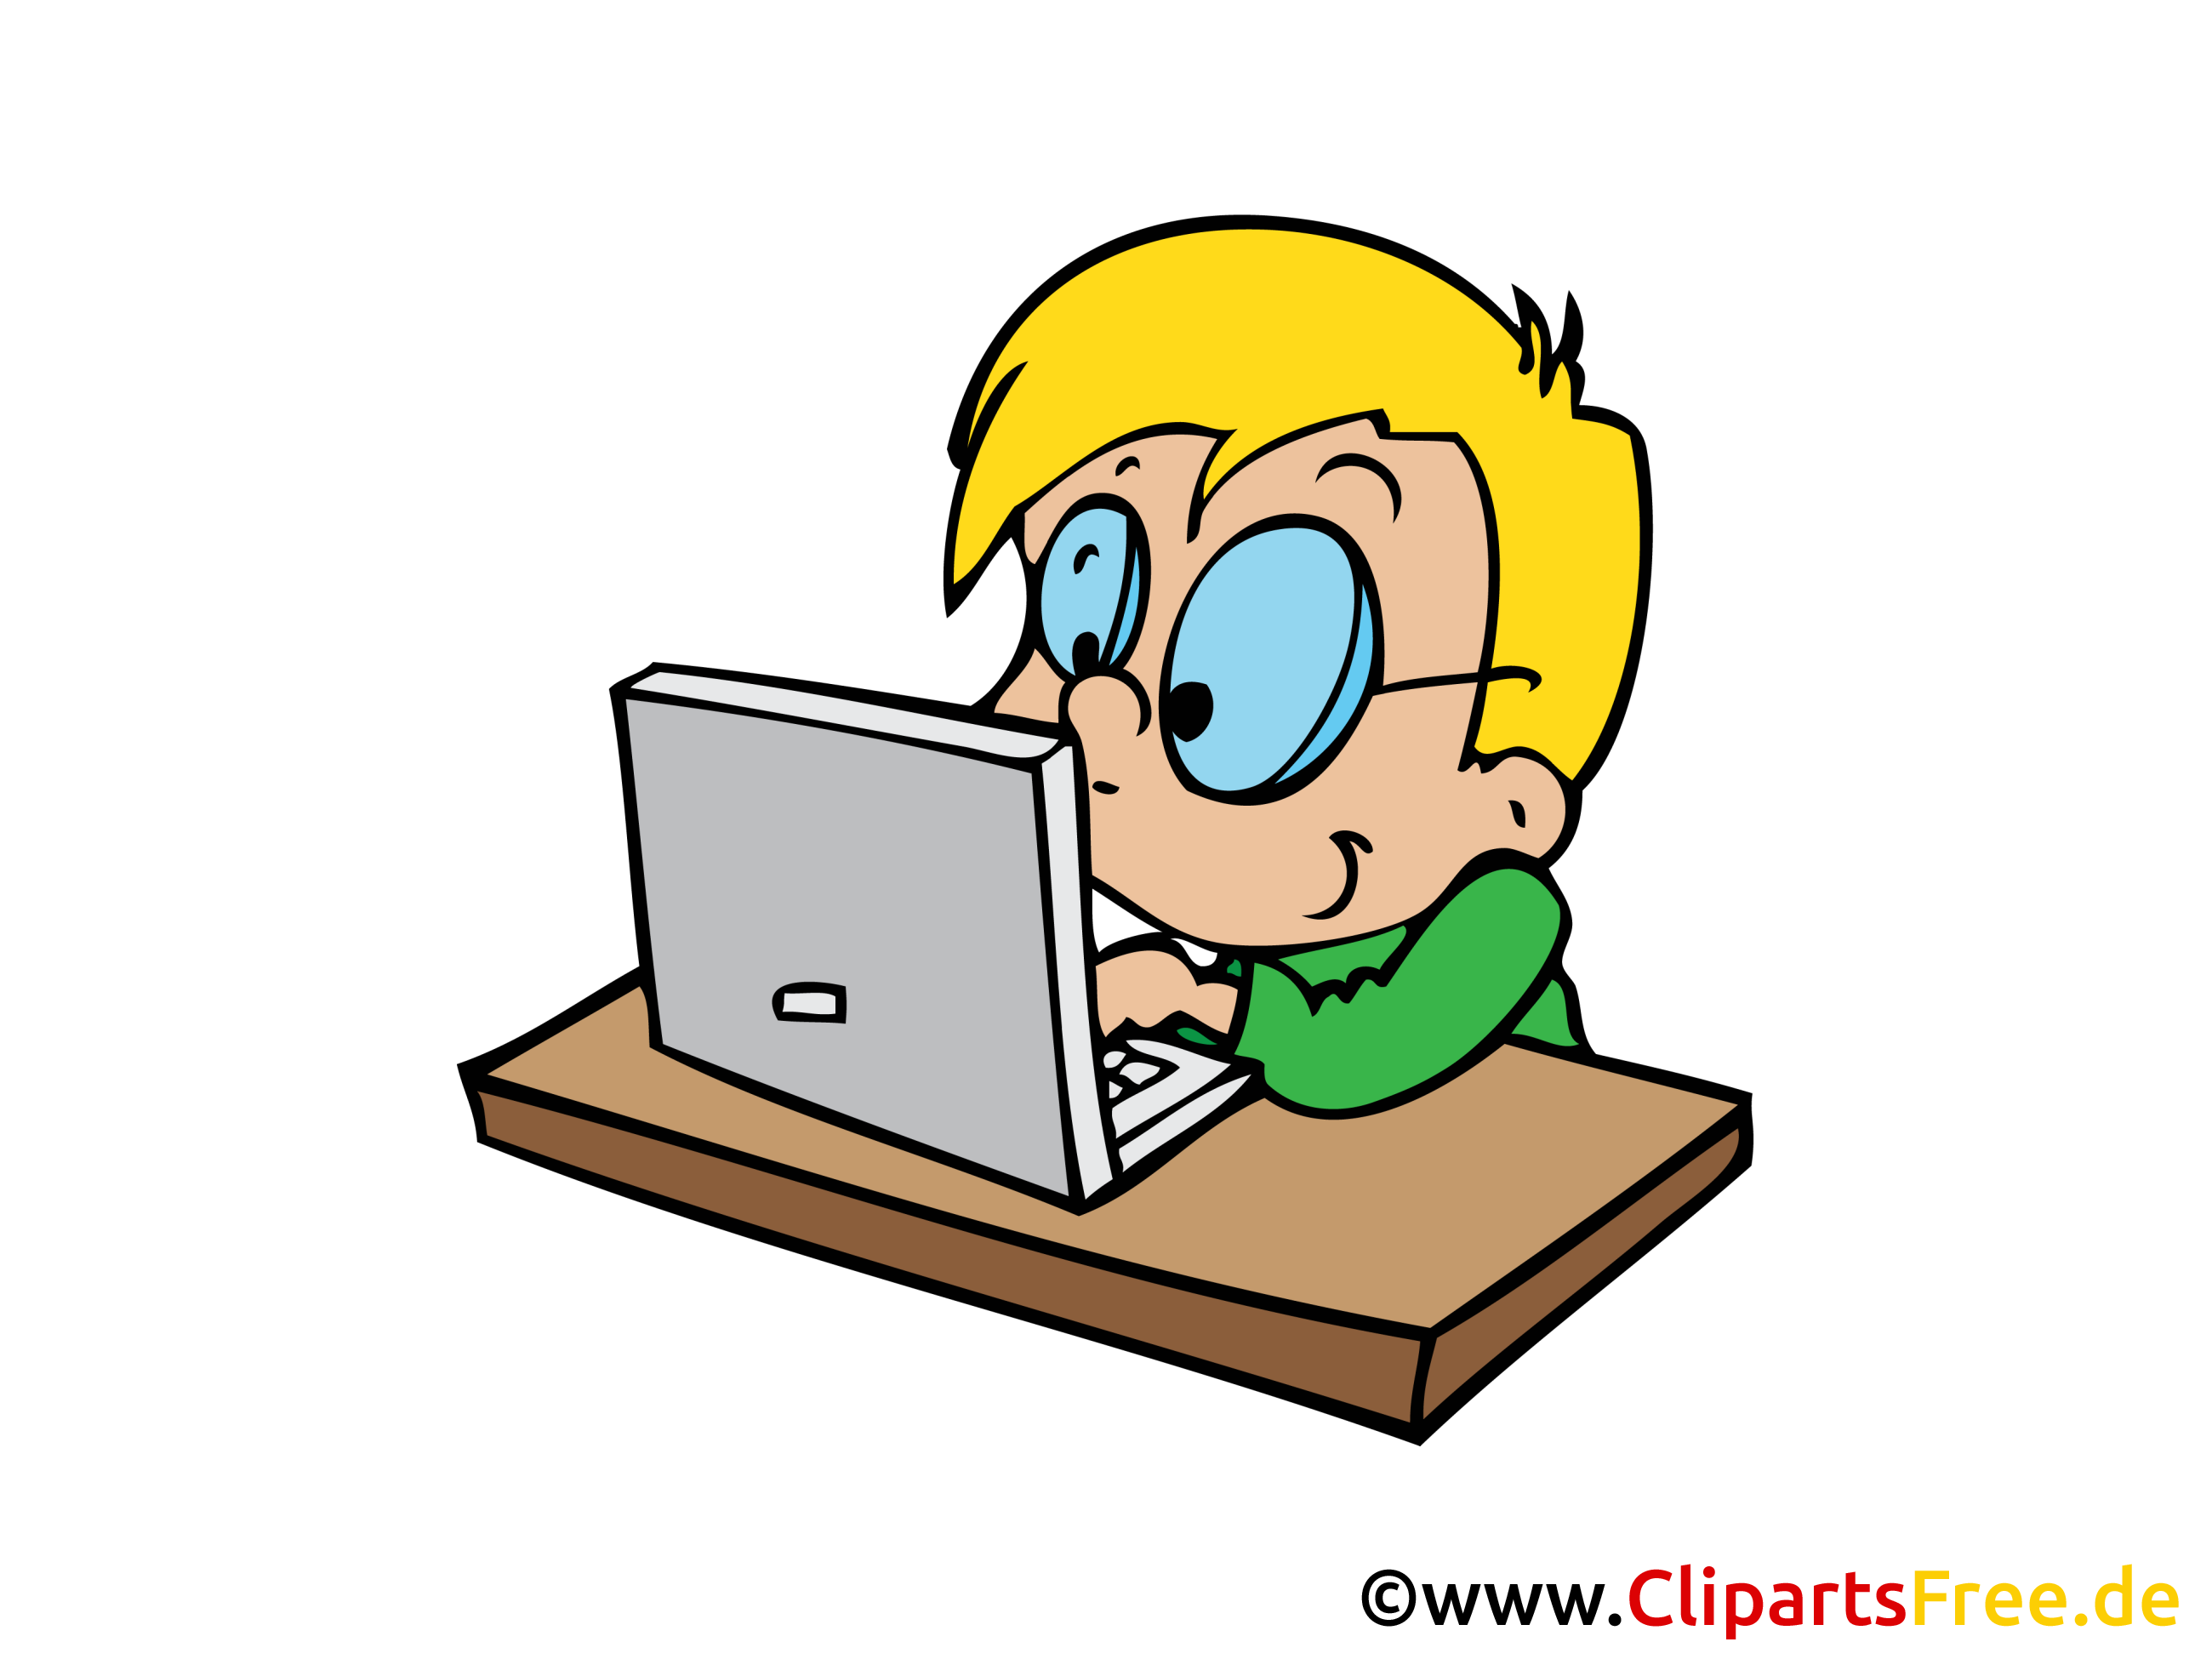 Enfant sur l'ordinateur dessin gratuit image